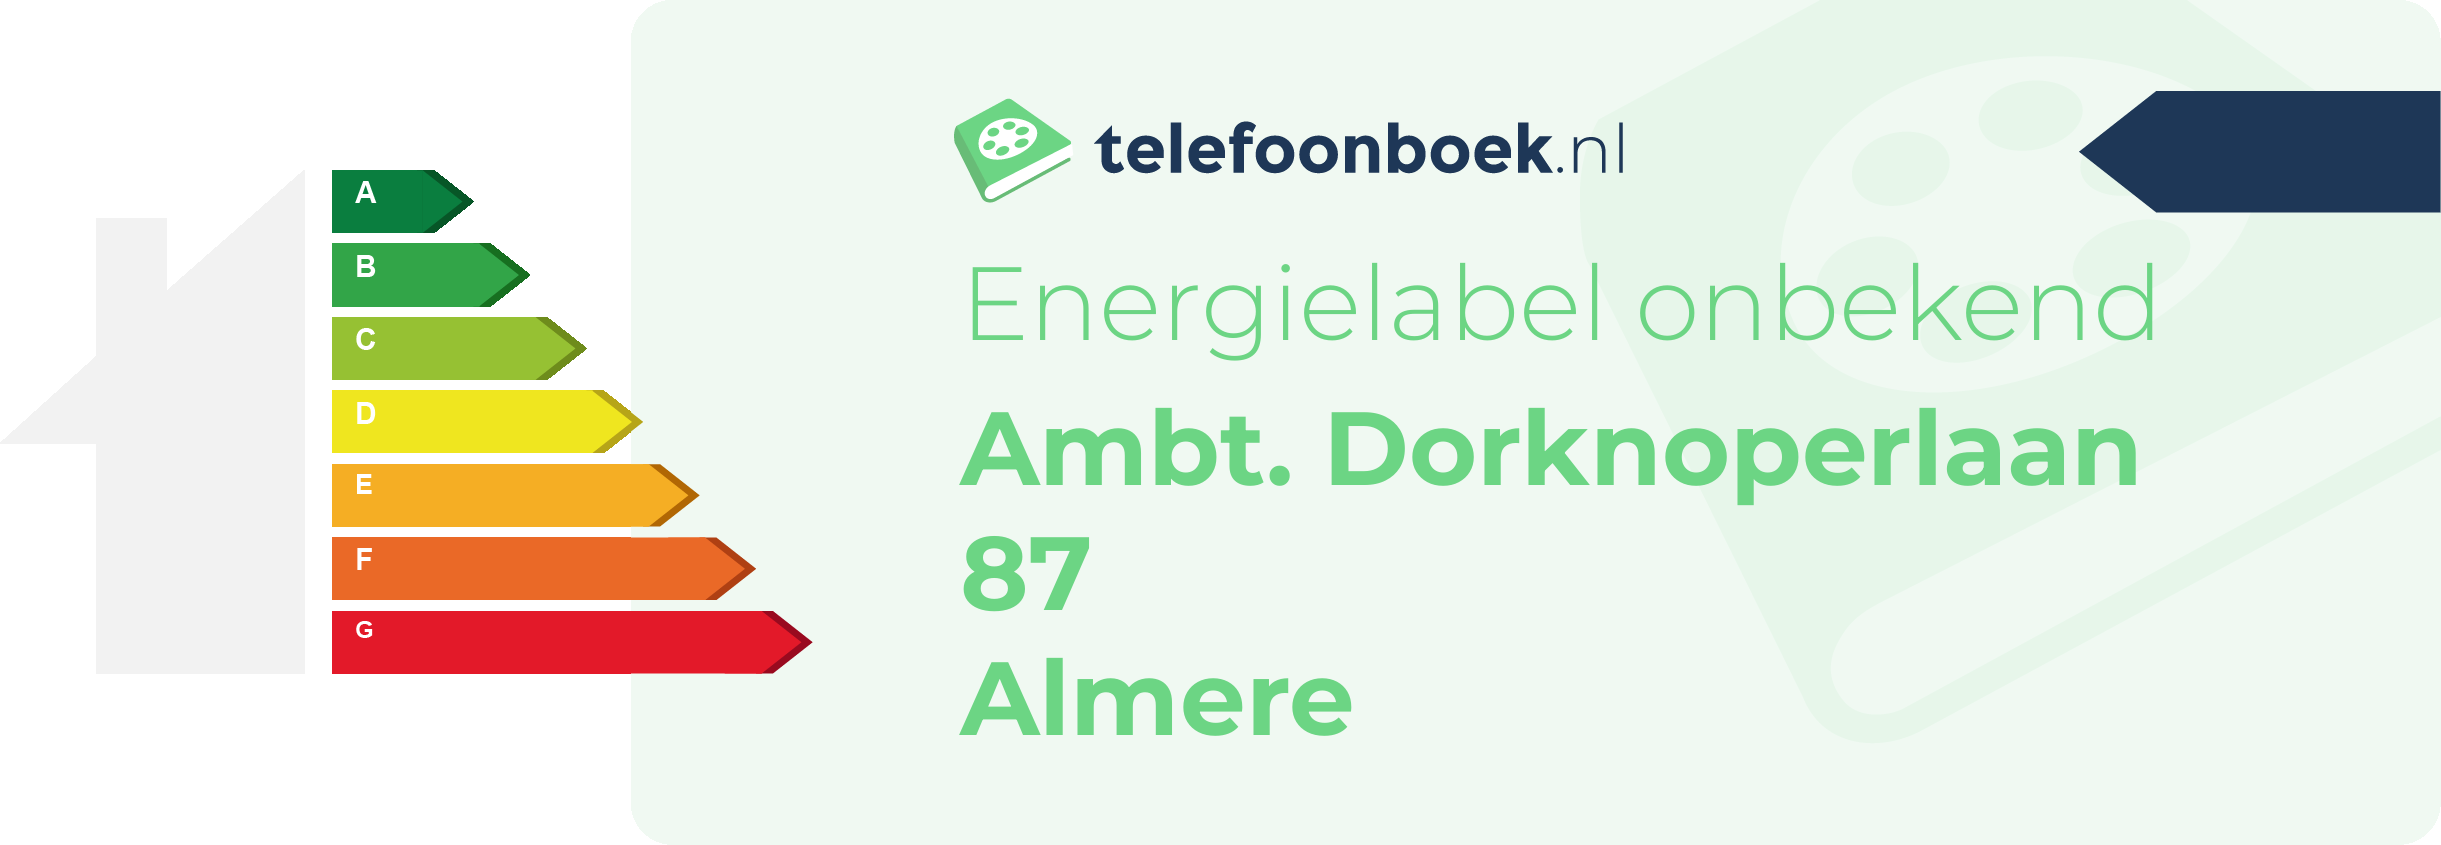 Energielabel Ambt. Dorknoperlaan 87 Almere